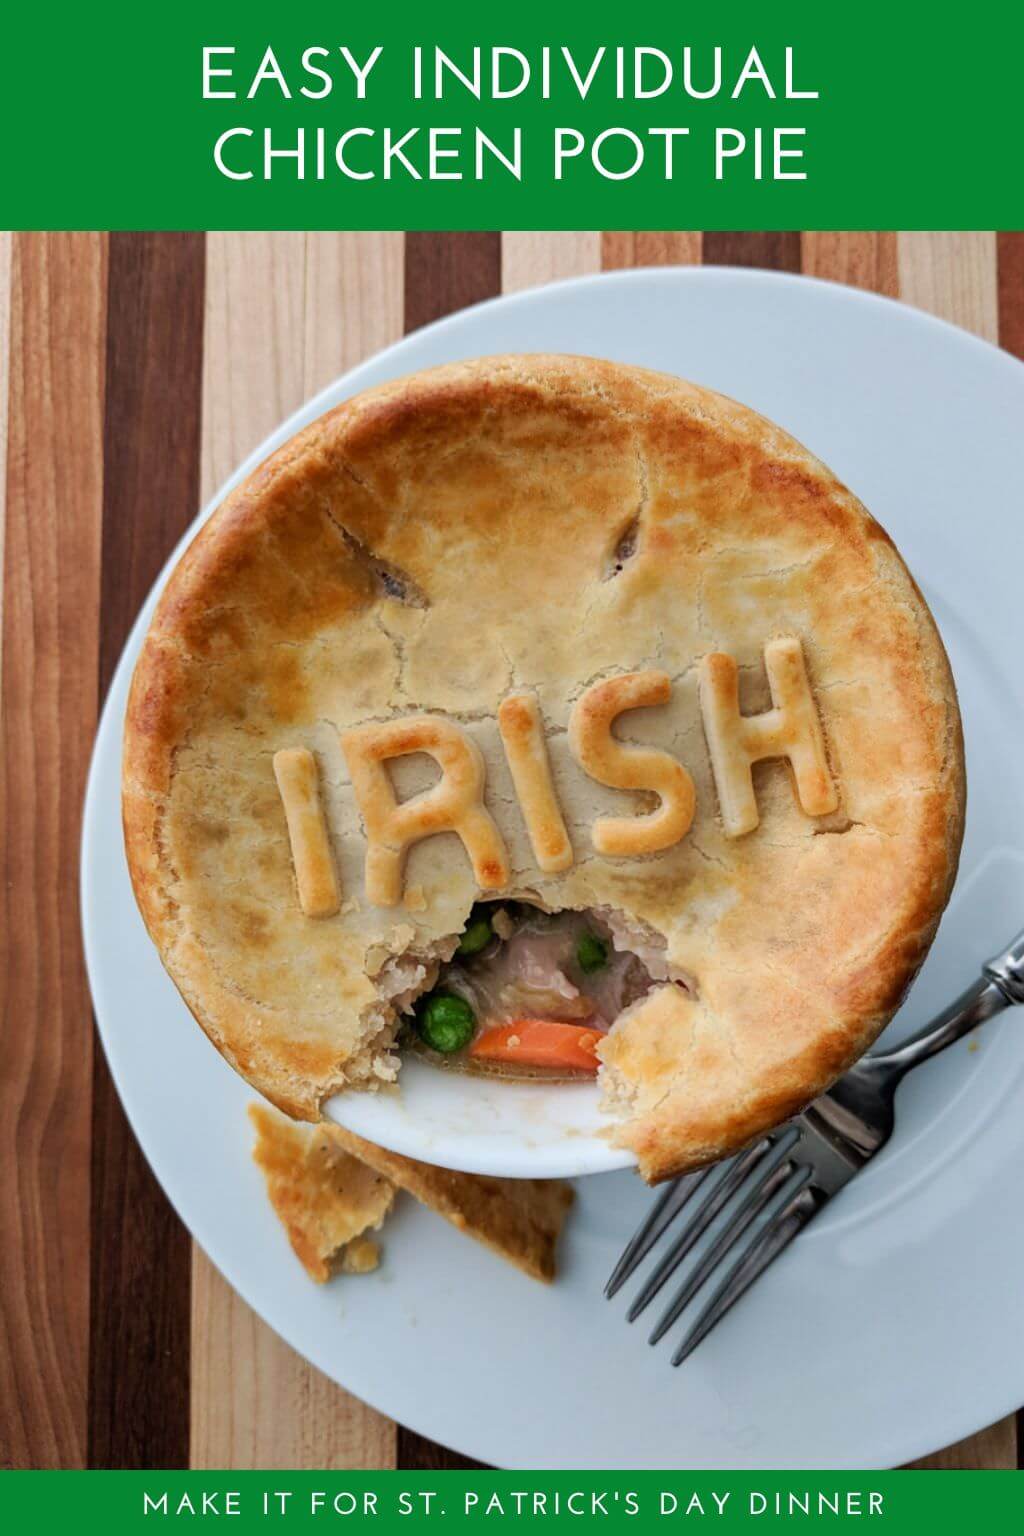 Chicken pot pie with Irish pie crust letters